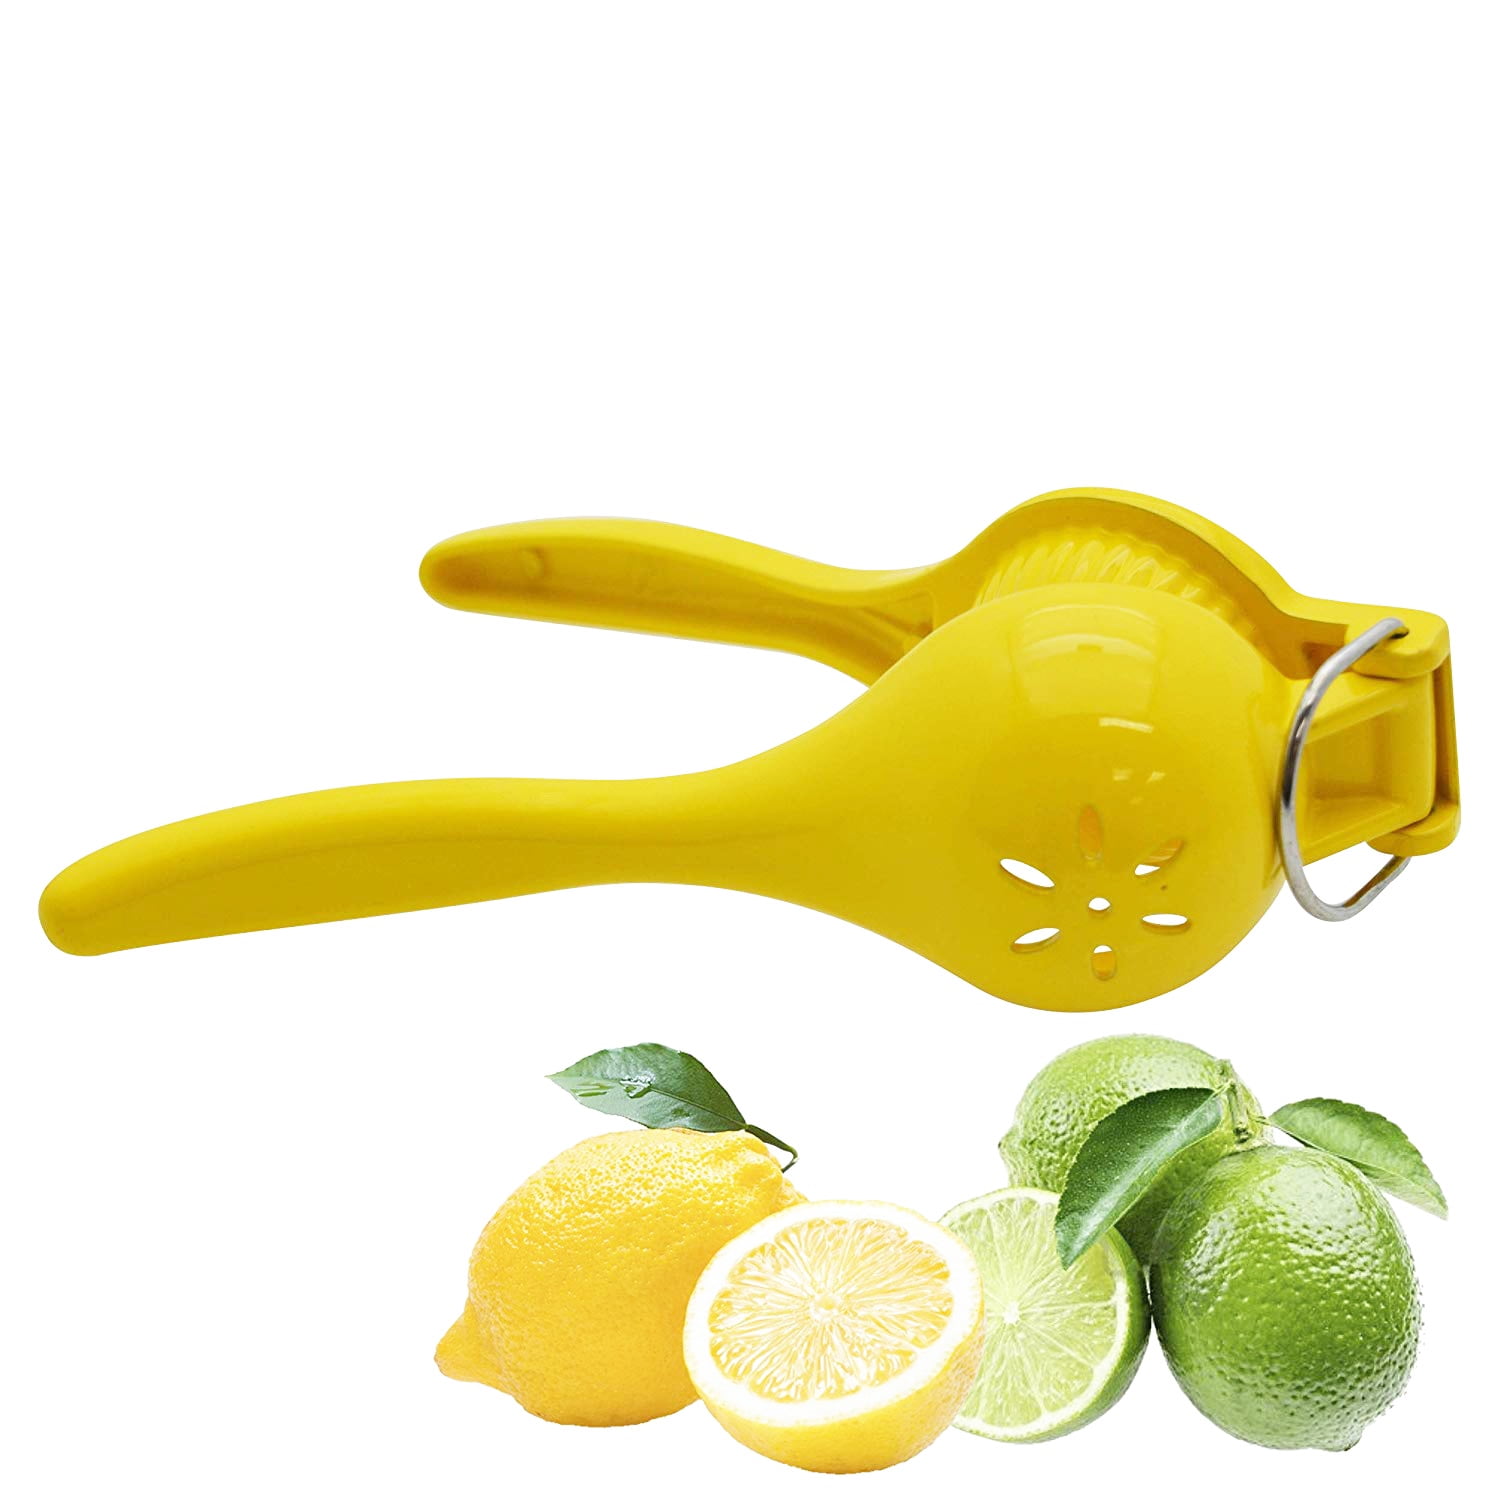 IMUSA USA IMU-71122 Plastic Lemon Squeezer Small 